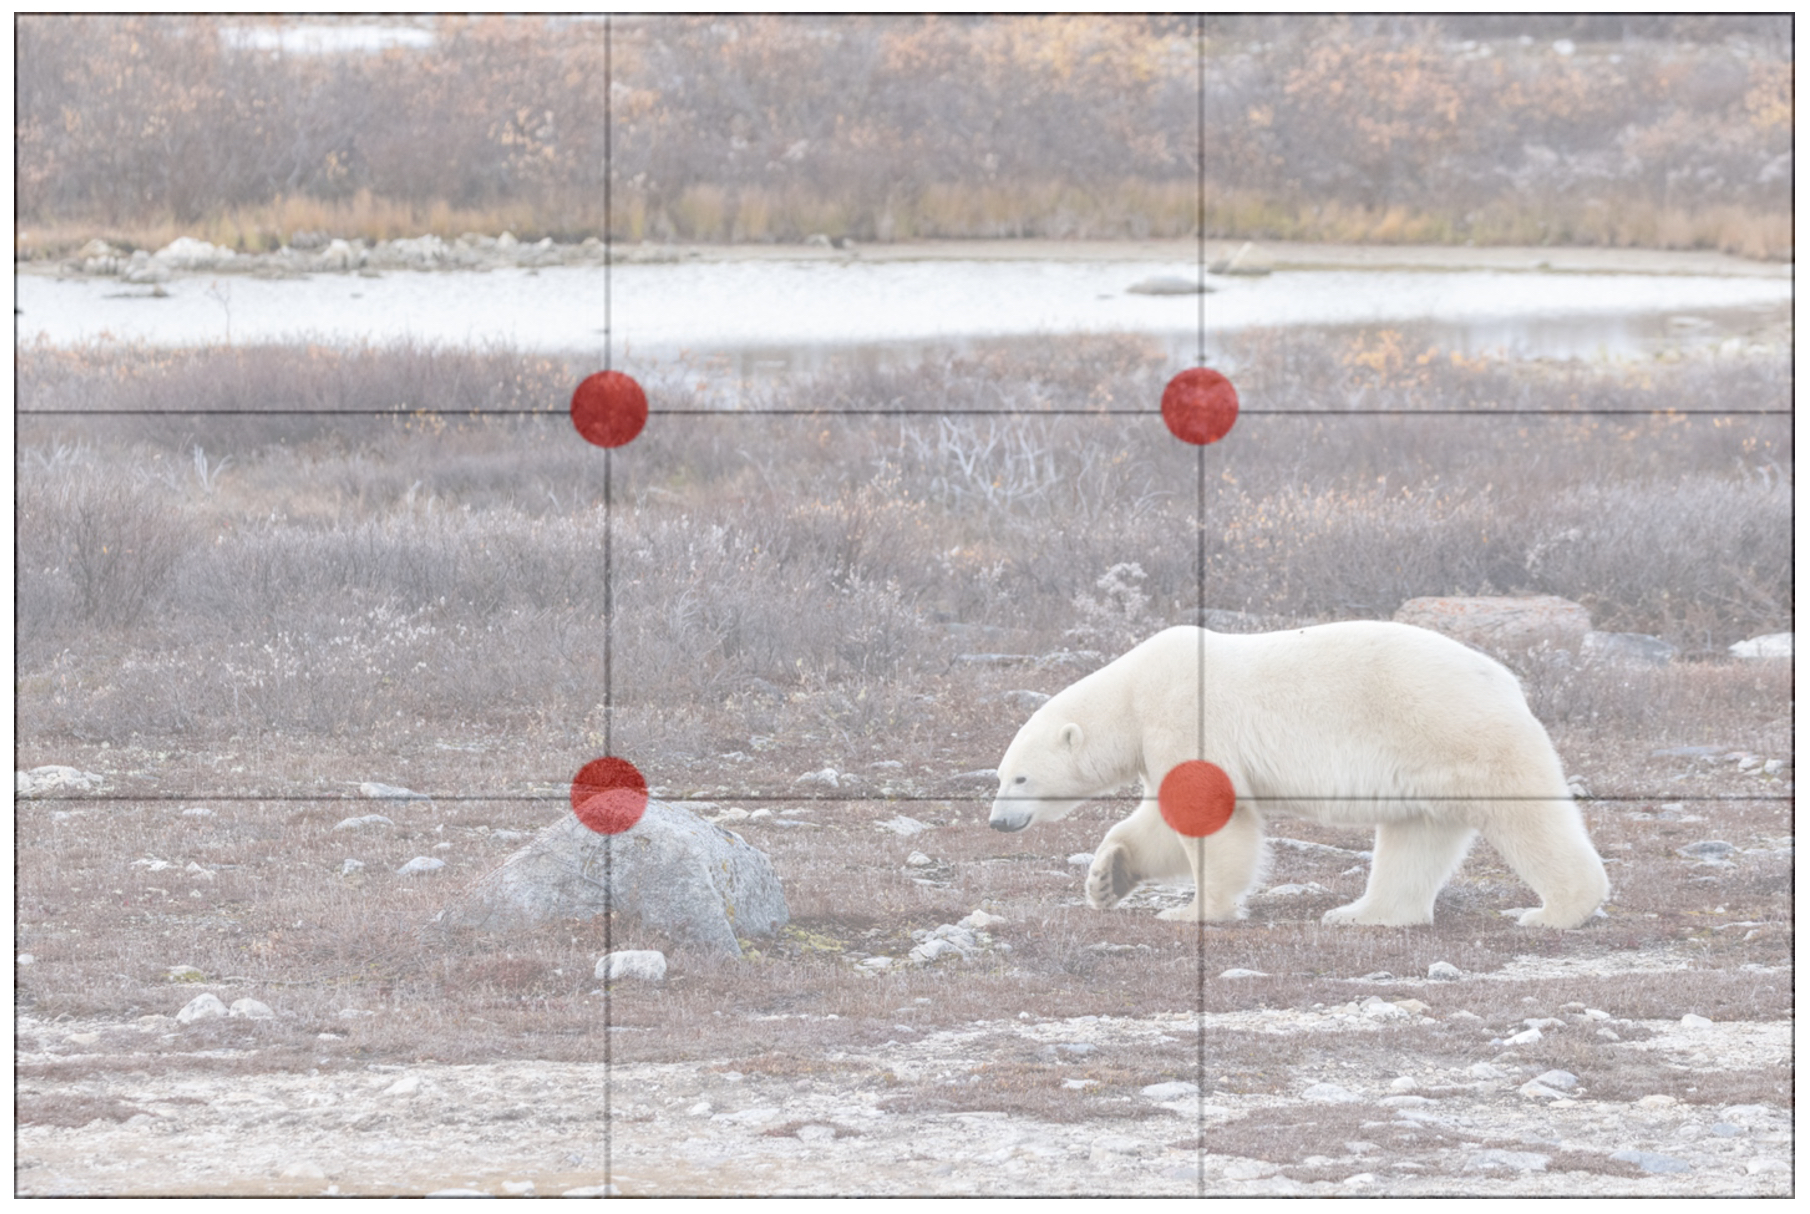 rule of thirds grid over a polar bear photo